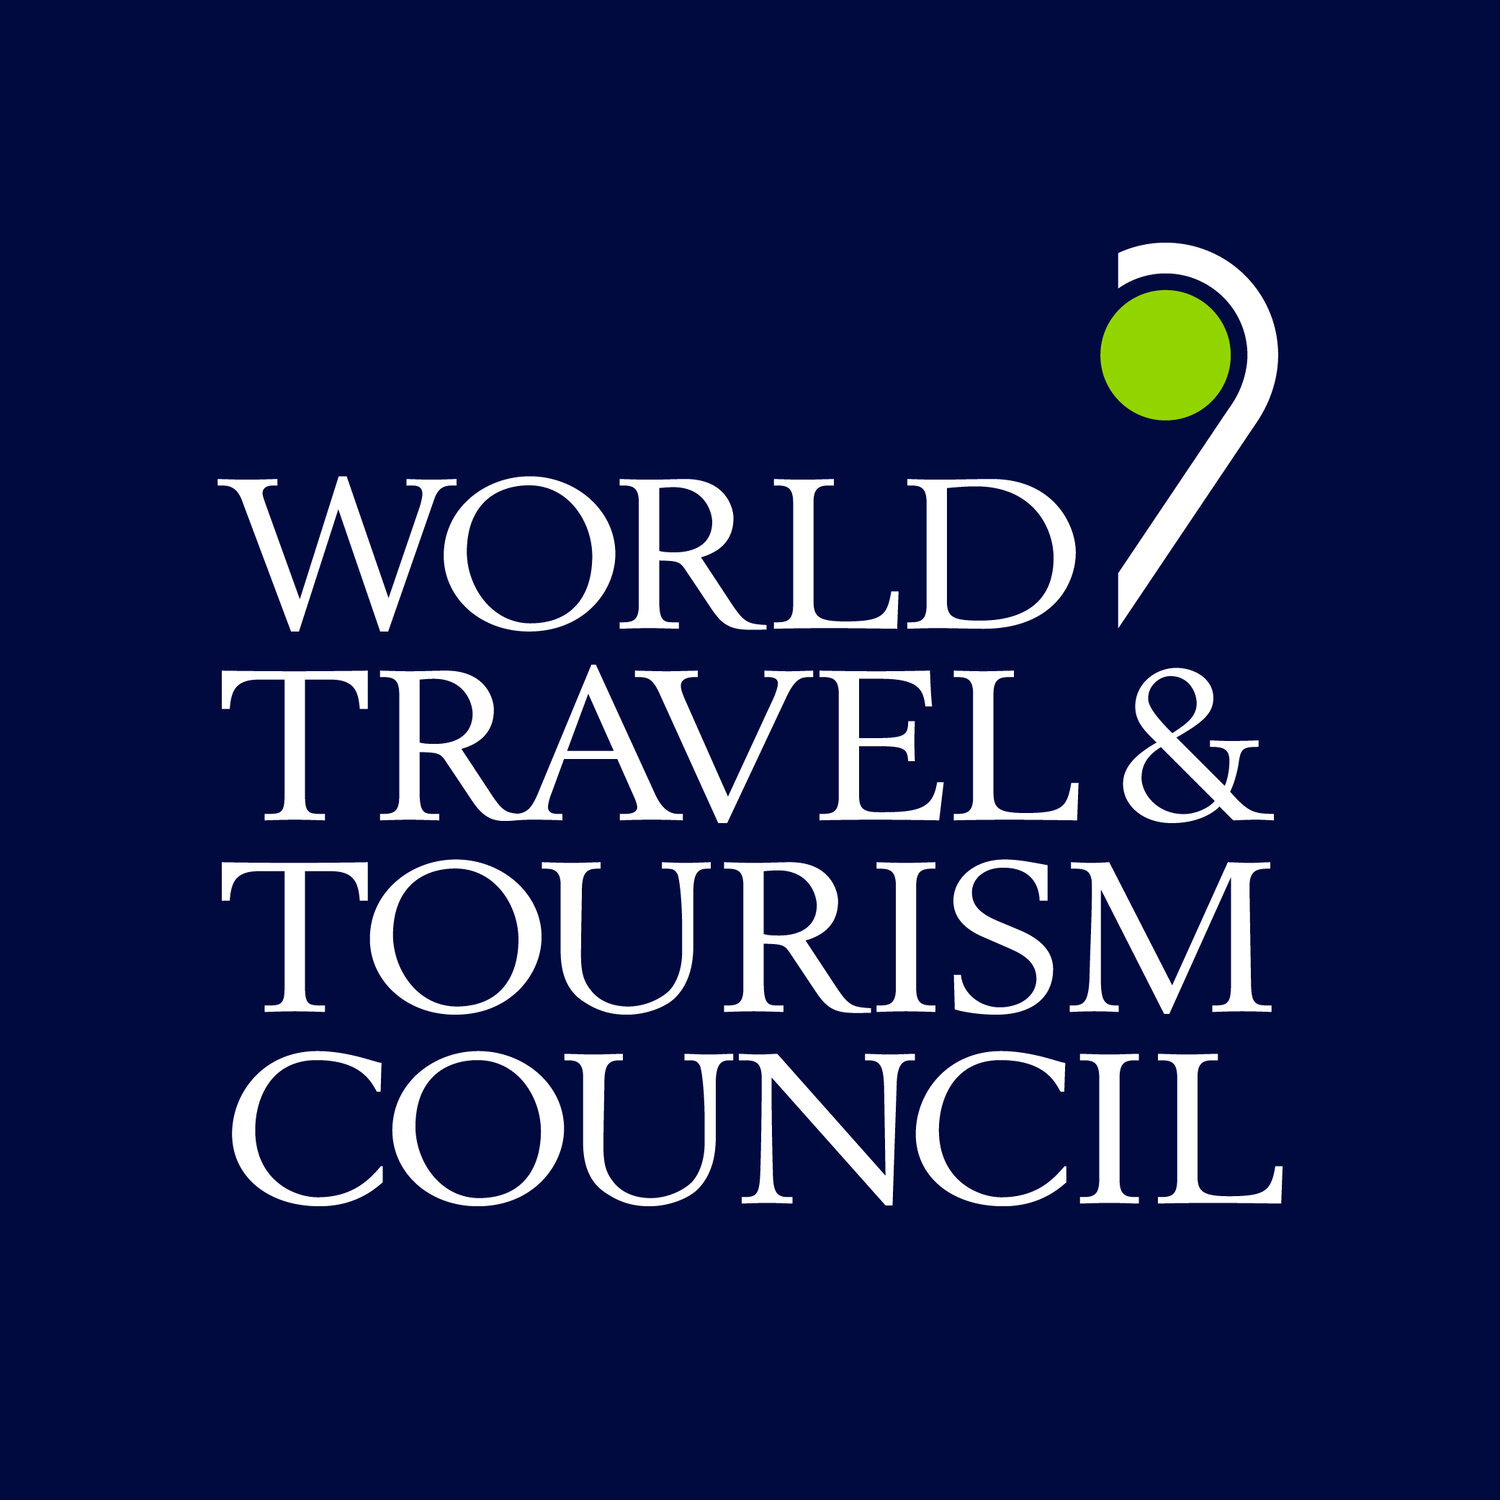 Dünya Seyahat ve Turizm Konseyi (WTTC), İngiltere'ye yurtdışına çıkışlar için uyguladığı 